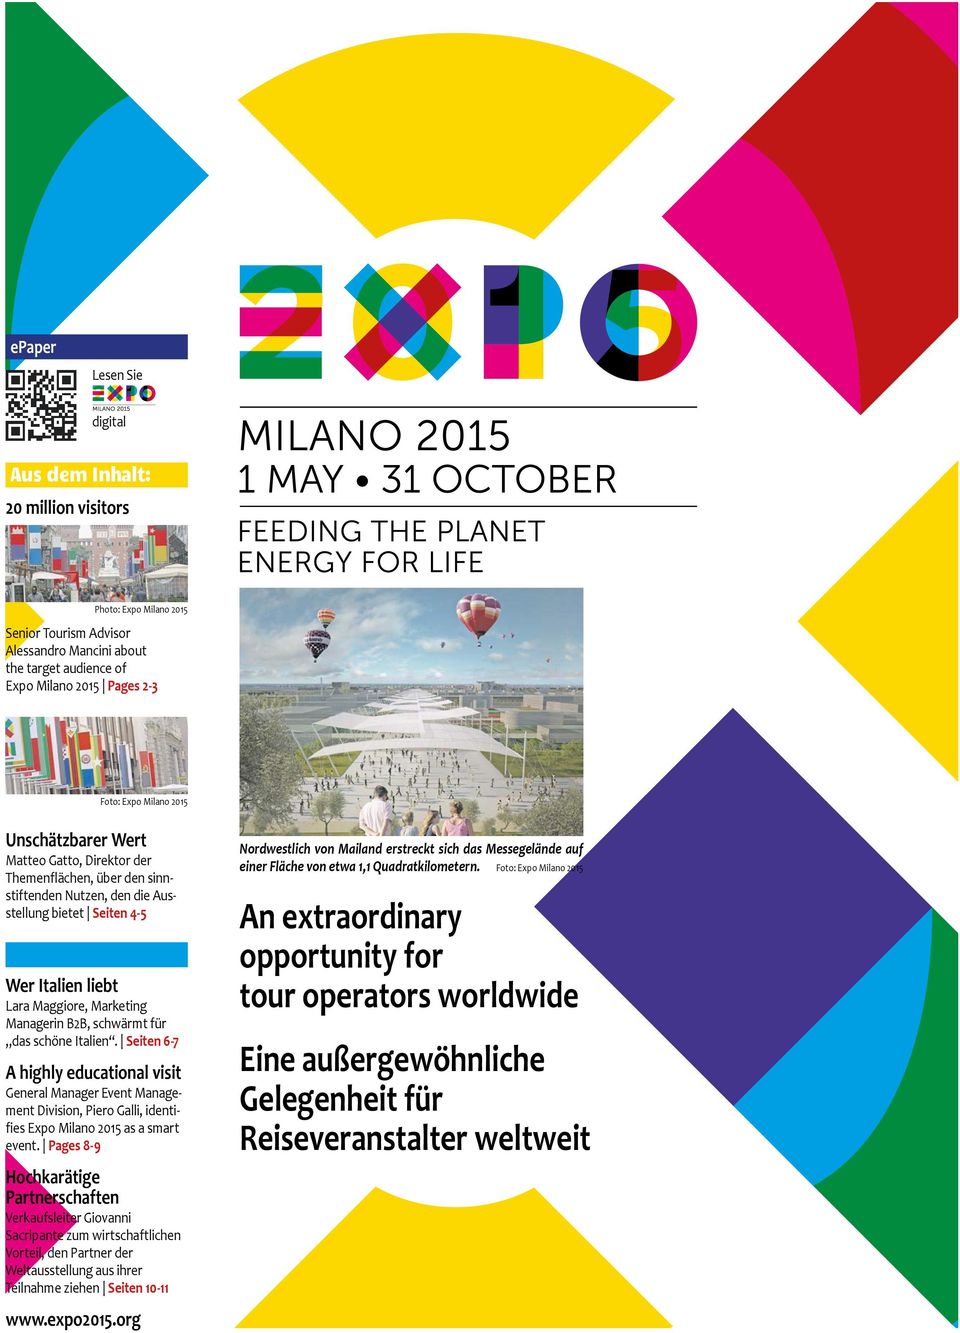 B2B, schwärmt für das schöne Italien. Seiten 6-7 A highly educational visit General Manager Event Management Division, Piero Galli, identifies Expo Milano 2015 as a smart event.